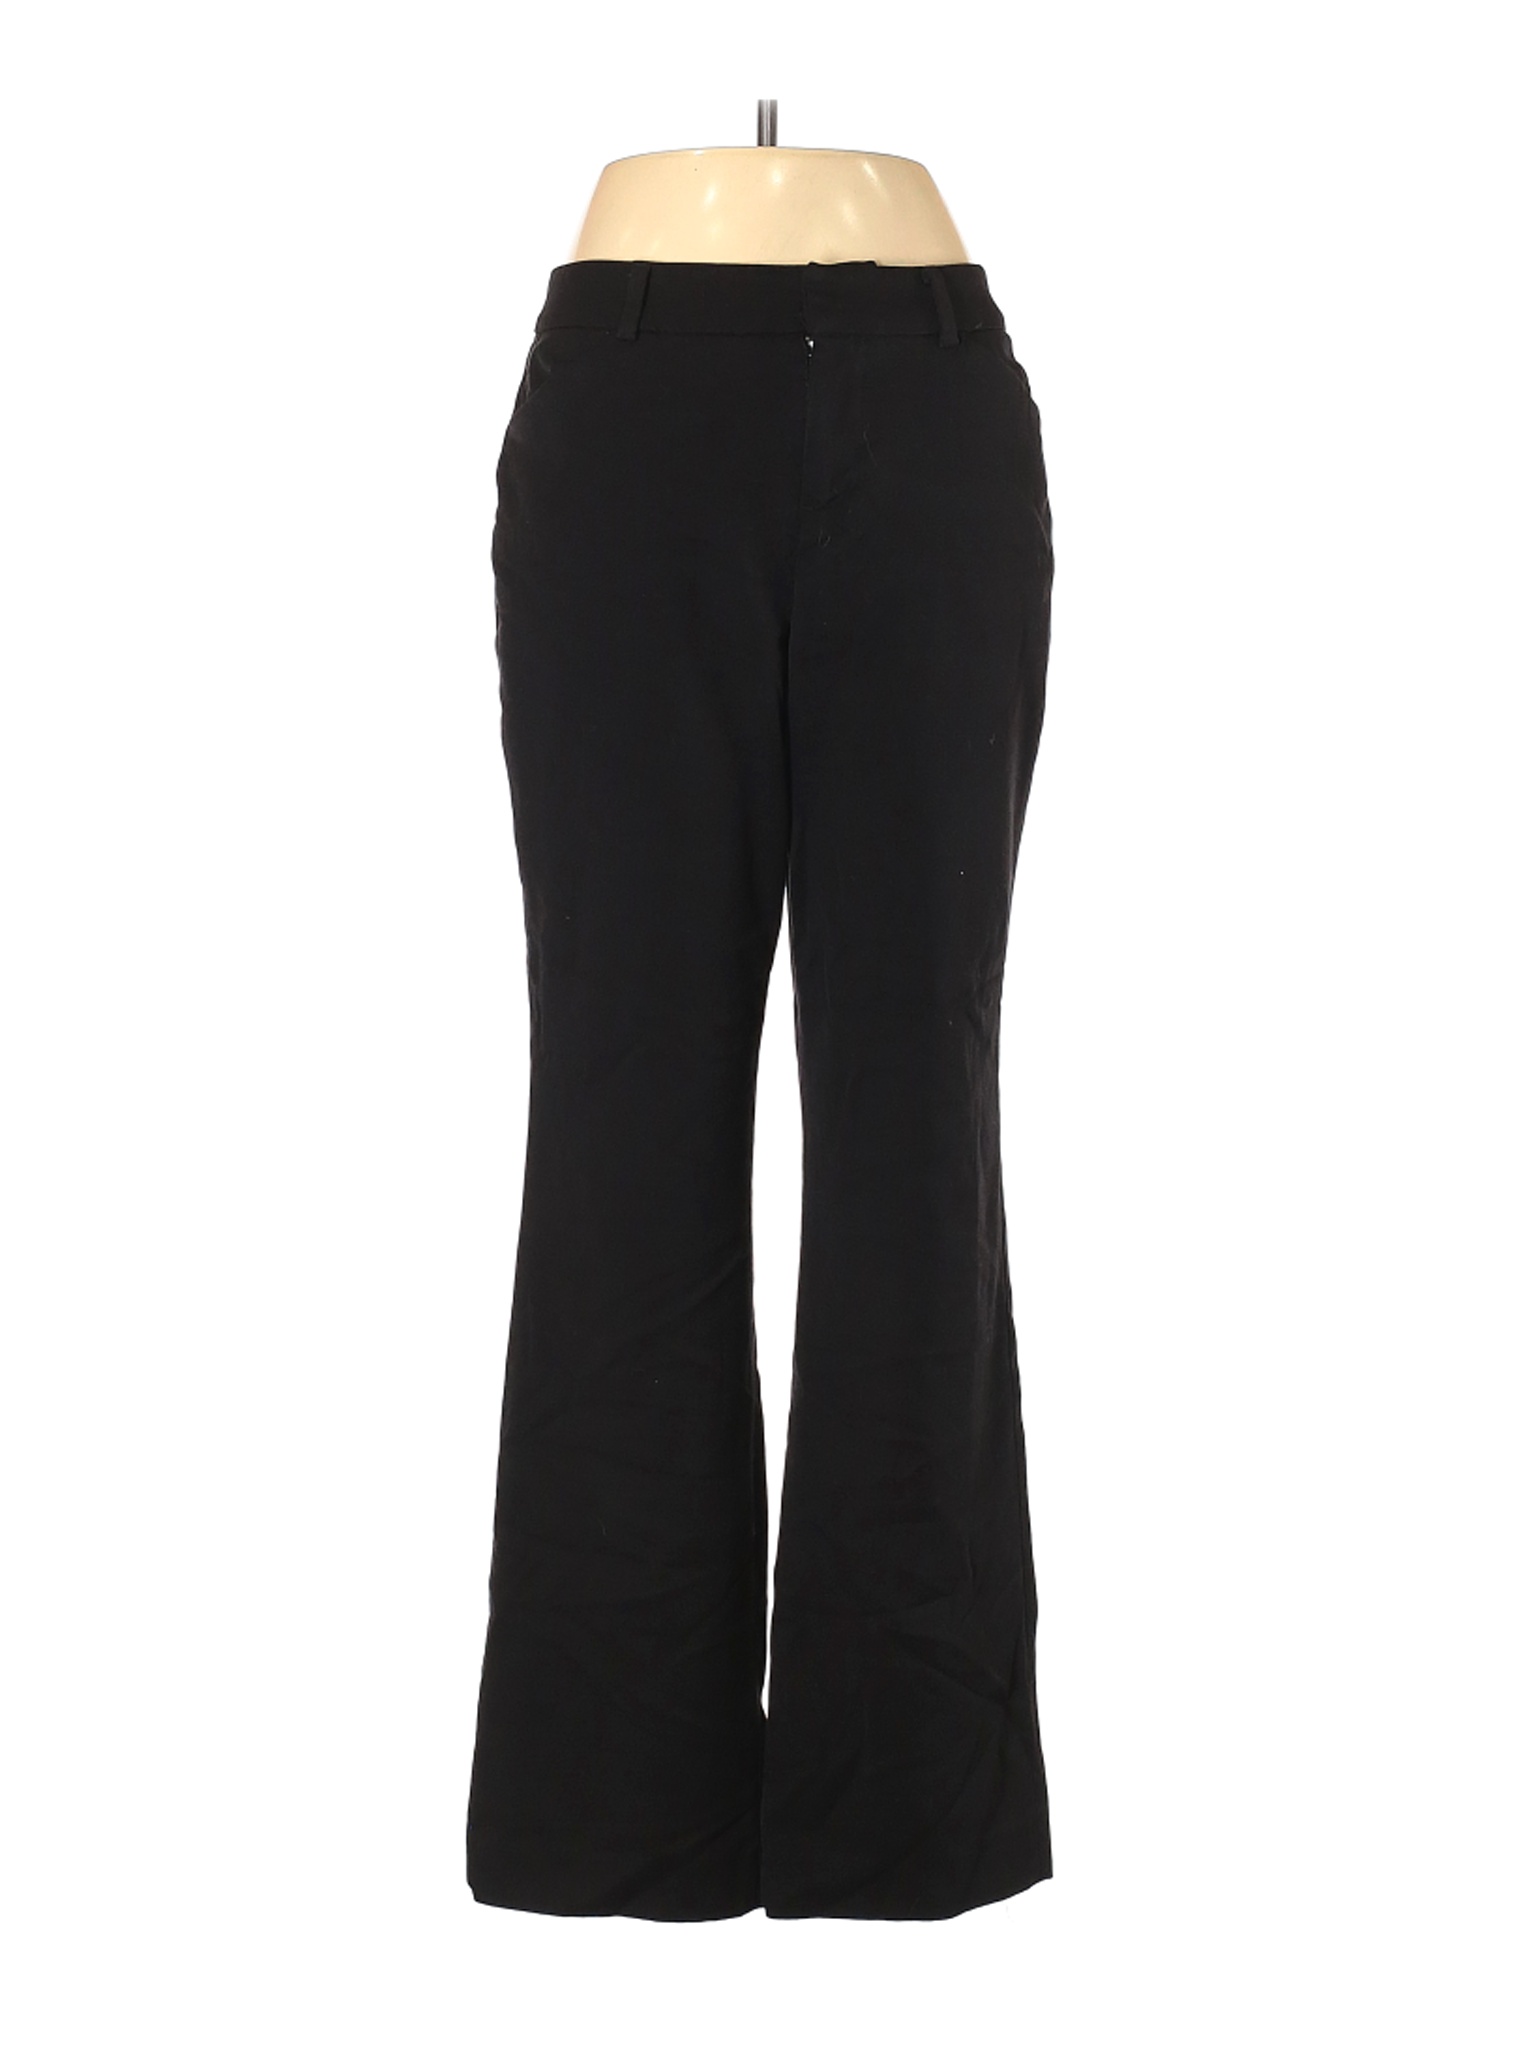 Nine West Women Black Dress Pants 8 | eBay